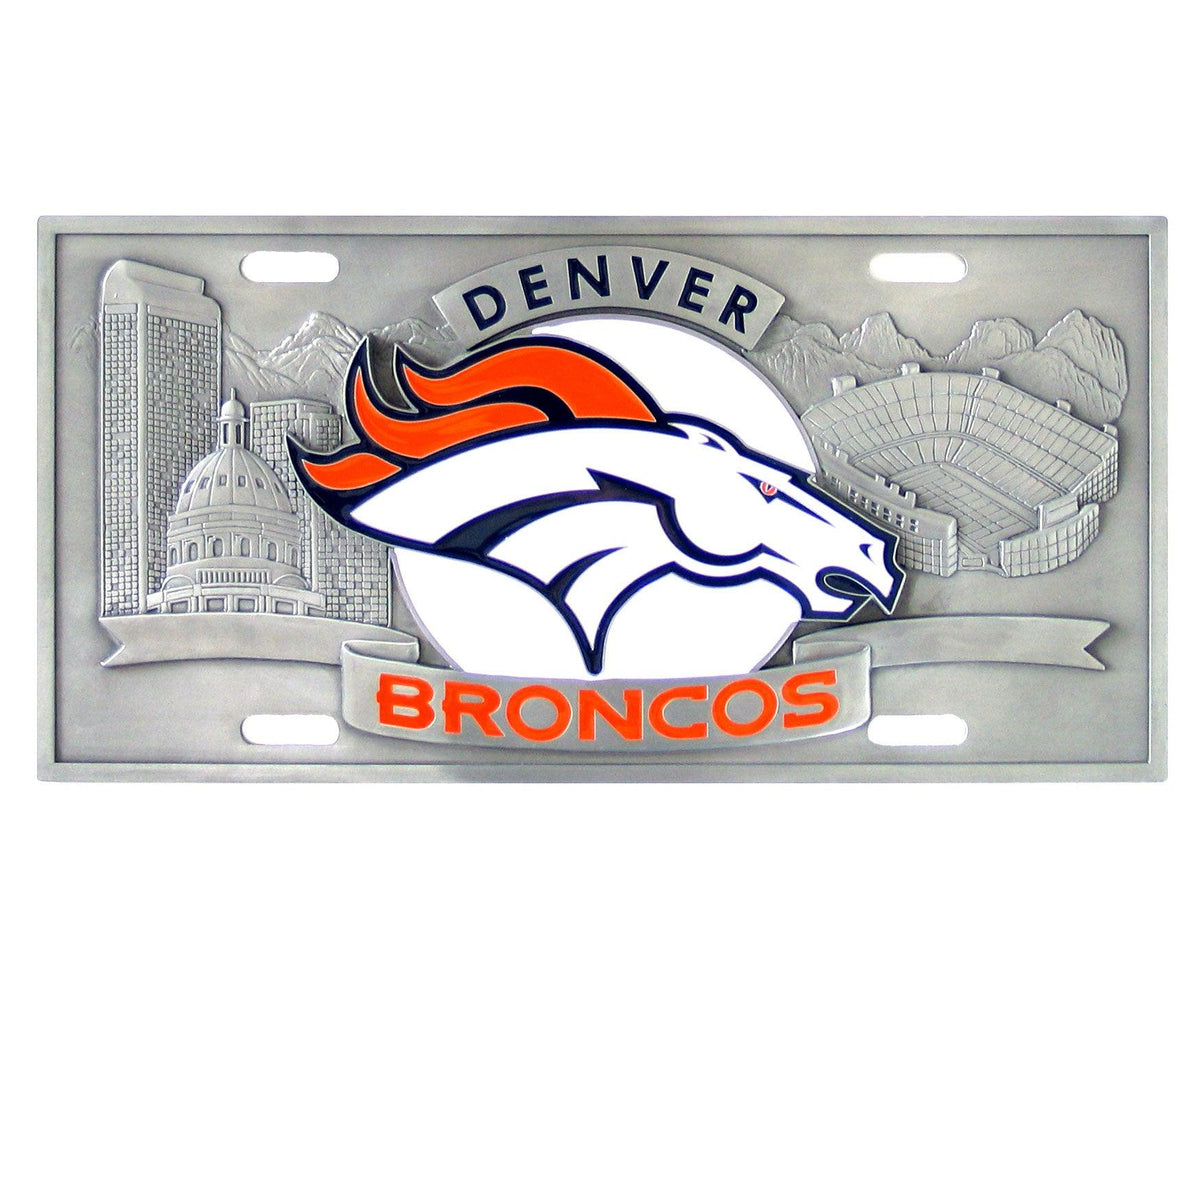 Denver Broncos Collector's License Plate - Flyclothing LLC